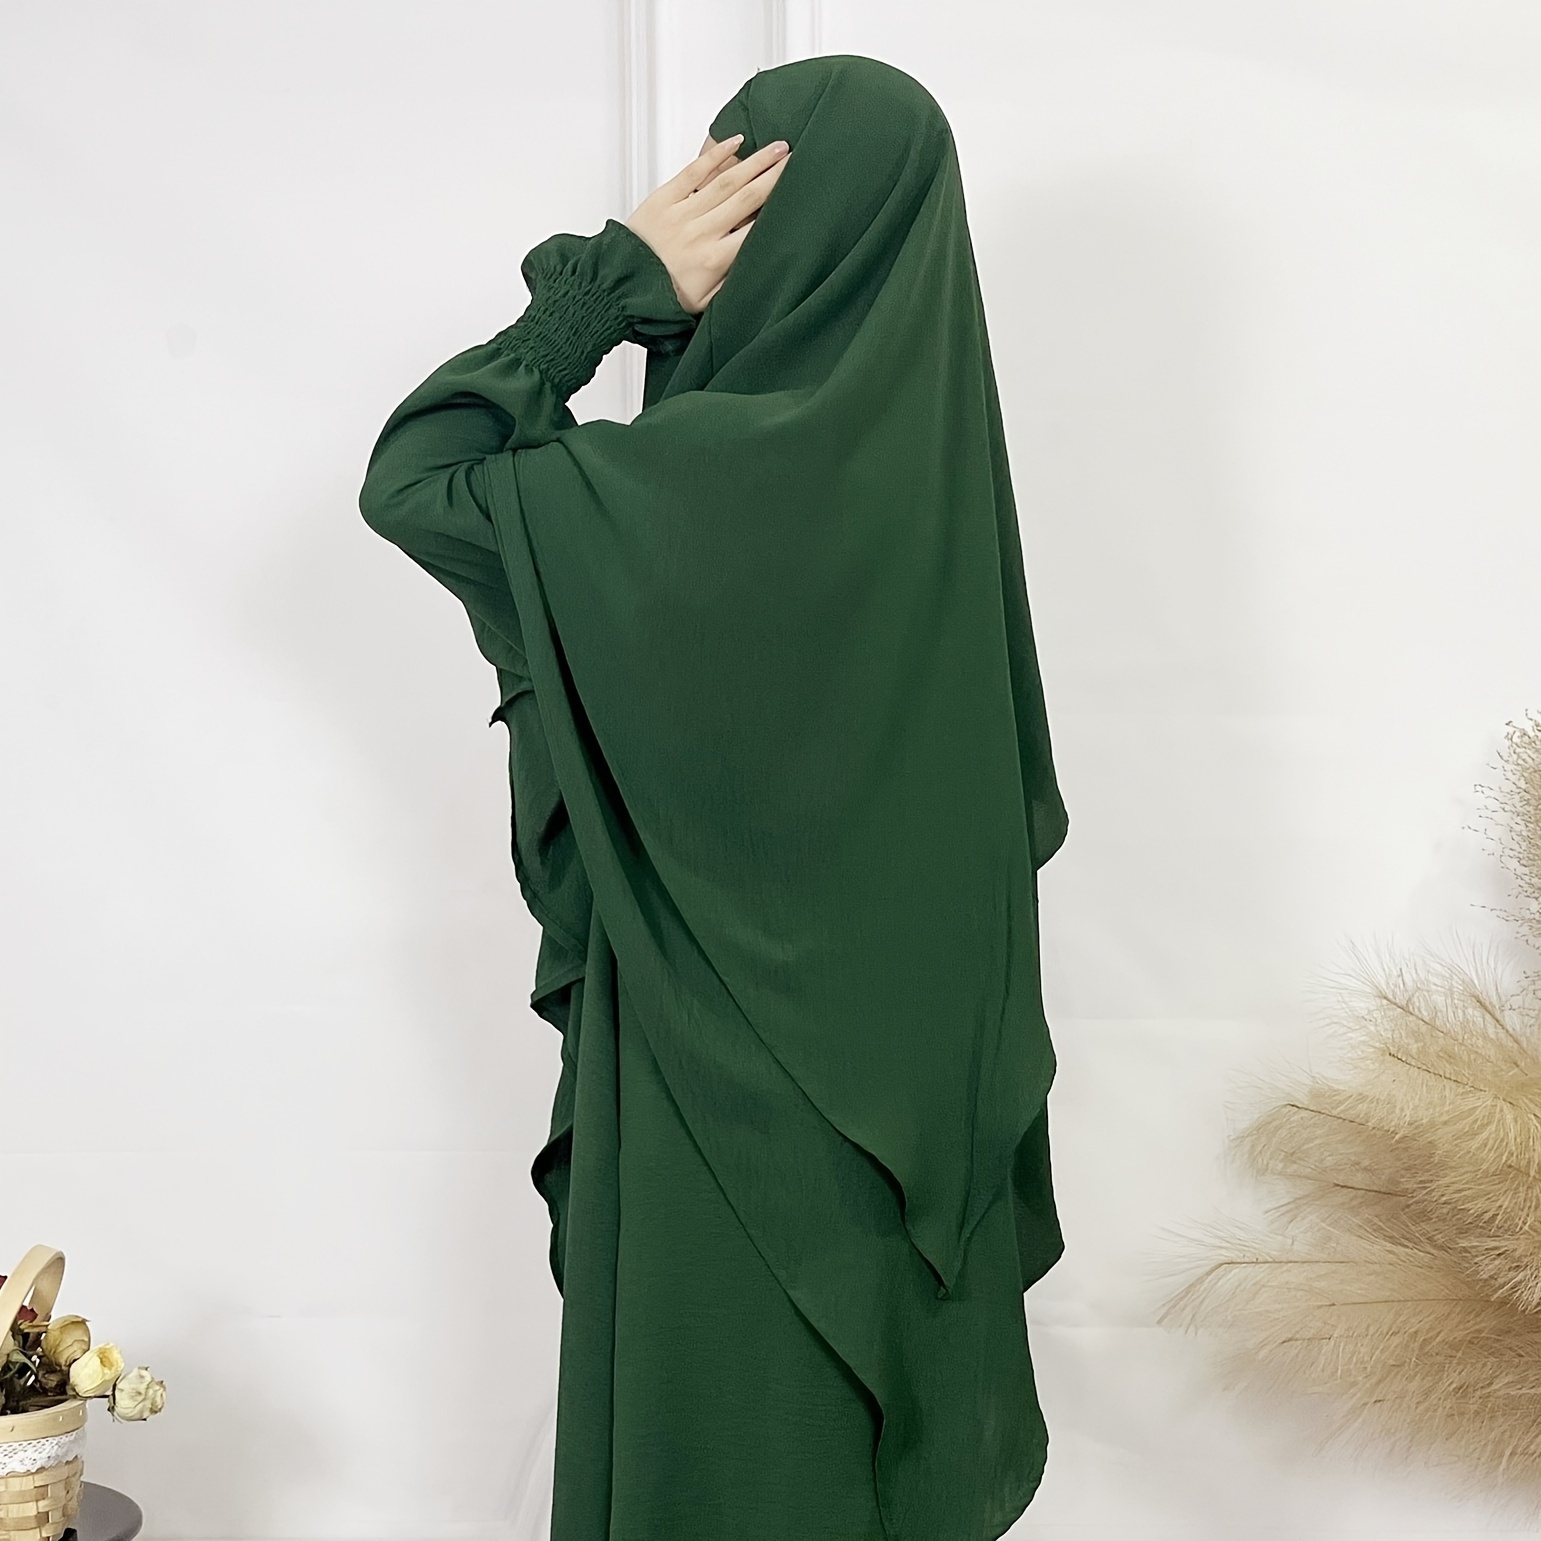 Élégant hijab long à plusieurs couches pour femme, style gâteau, plusieurs options de couleurs unies, cadeaux hijab khimar modestes pour lAïd